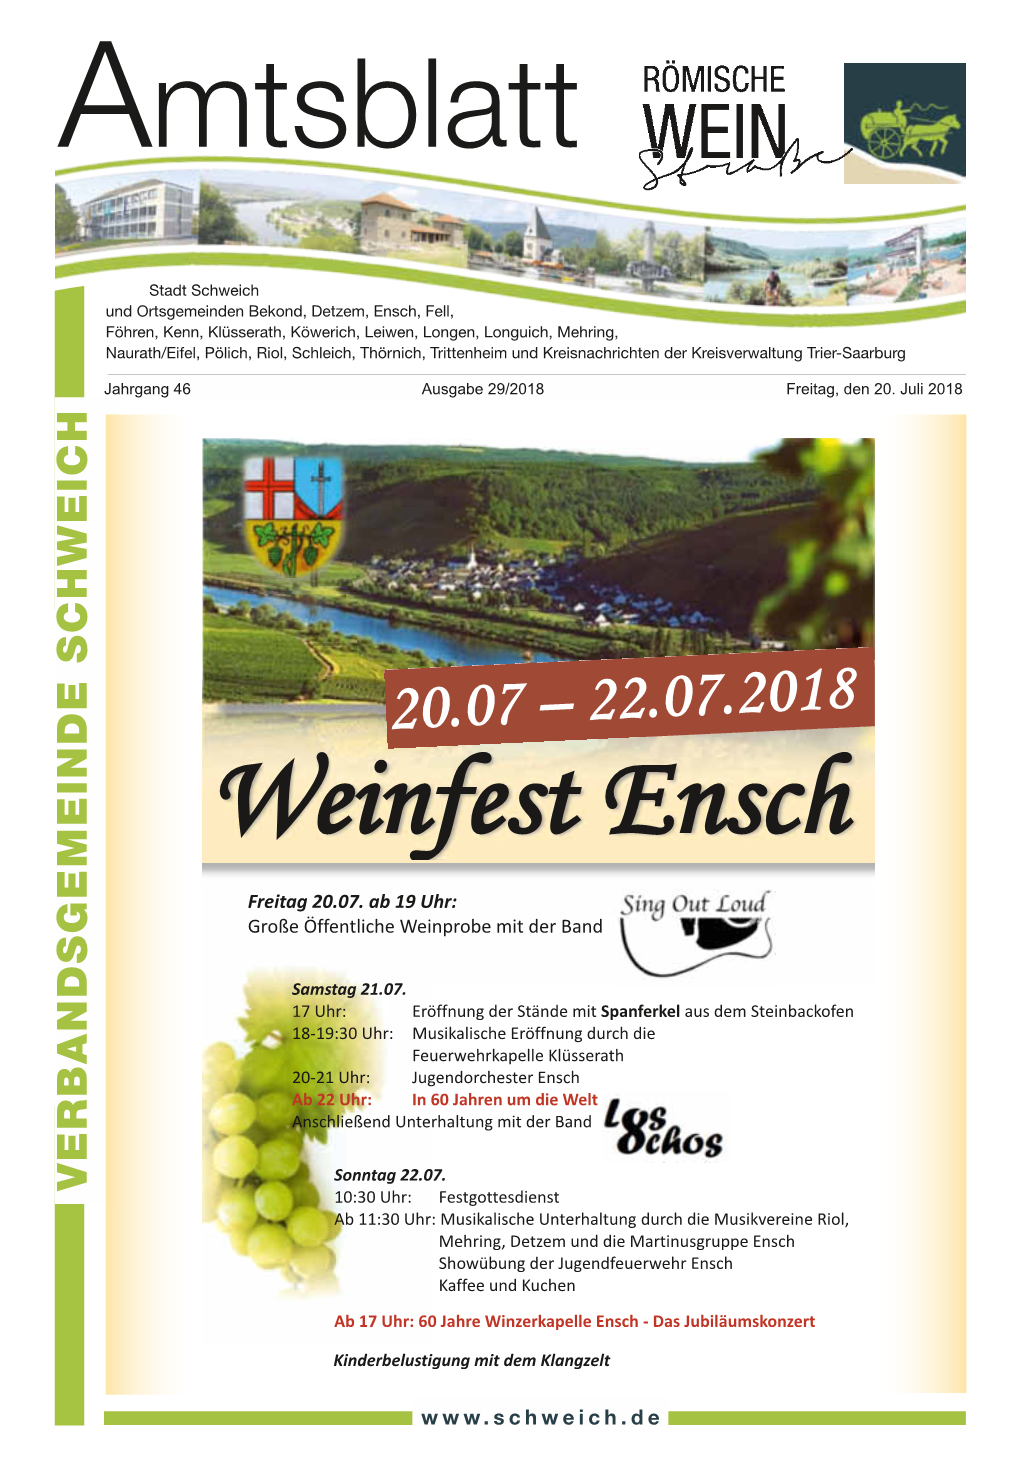 Weinfest Ensch